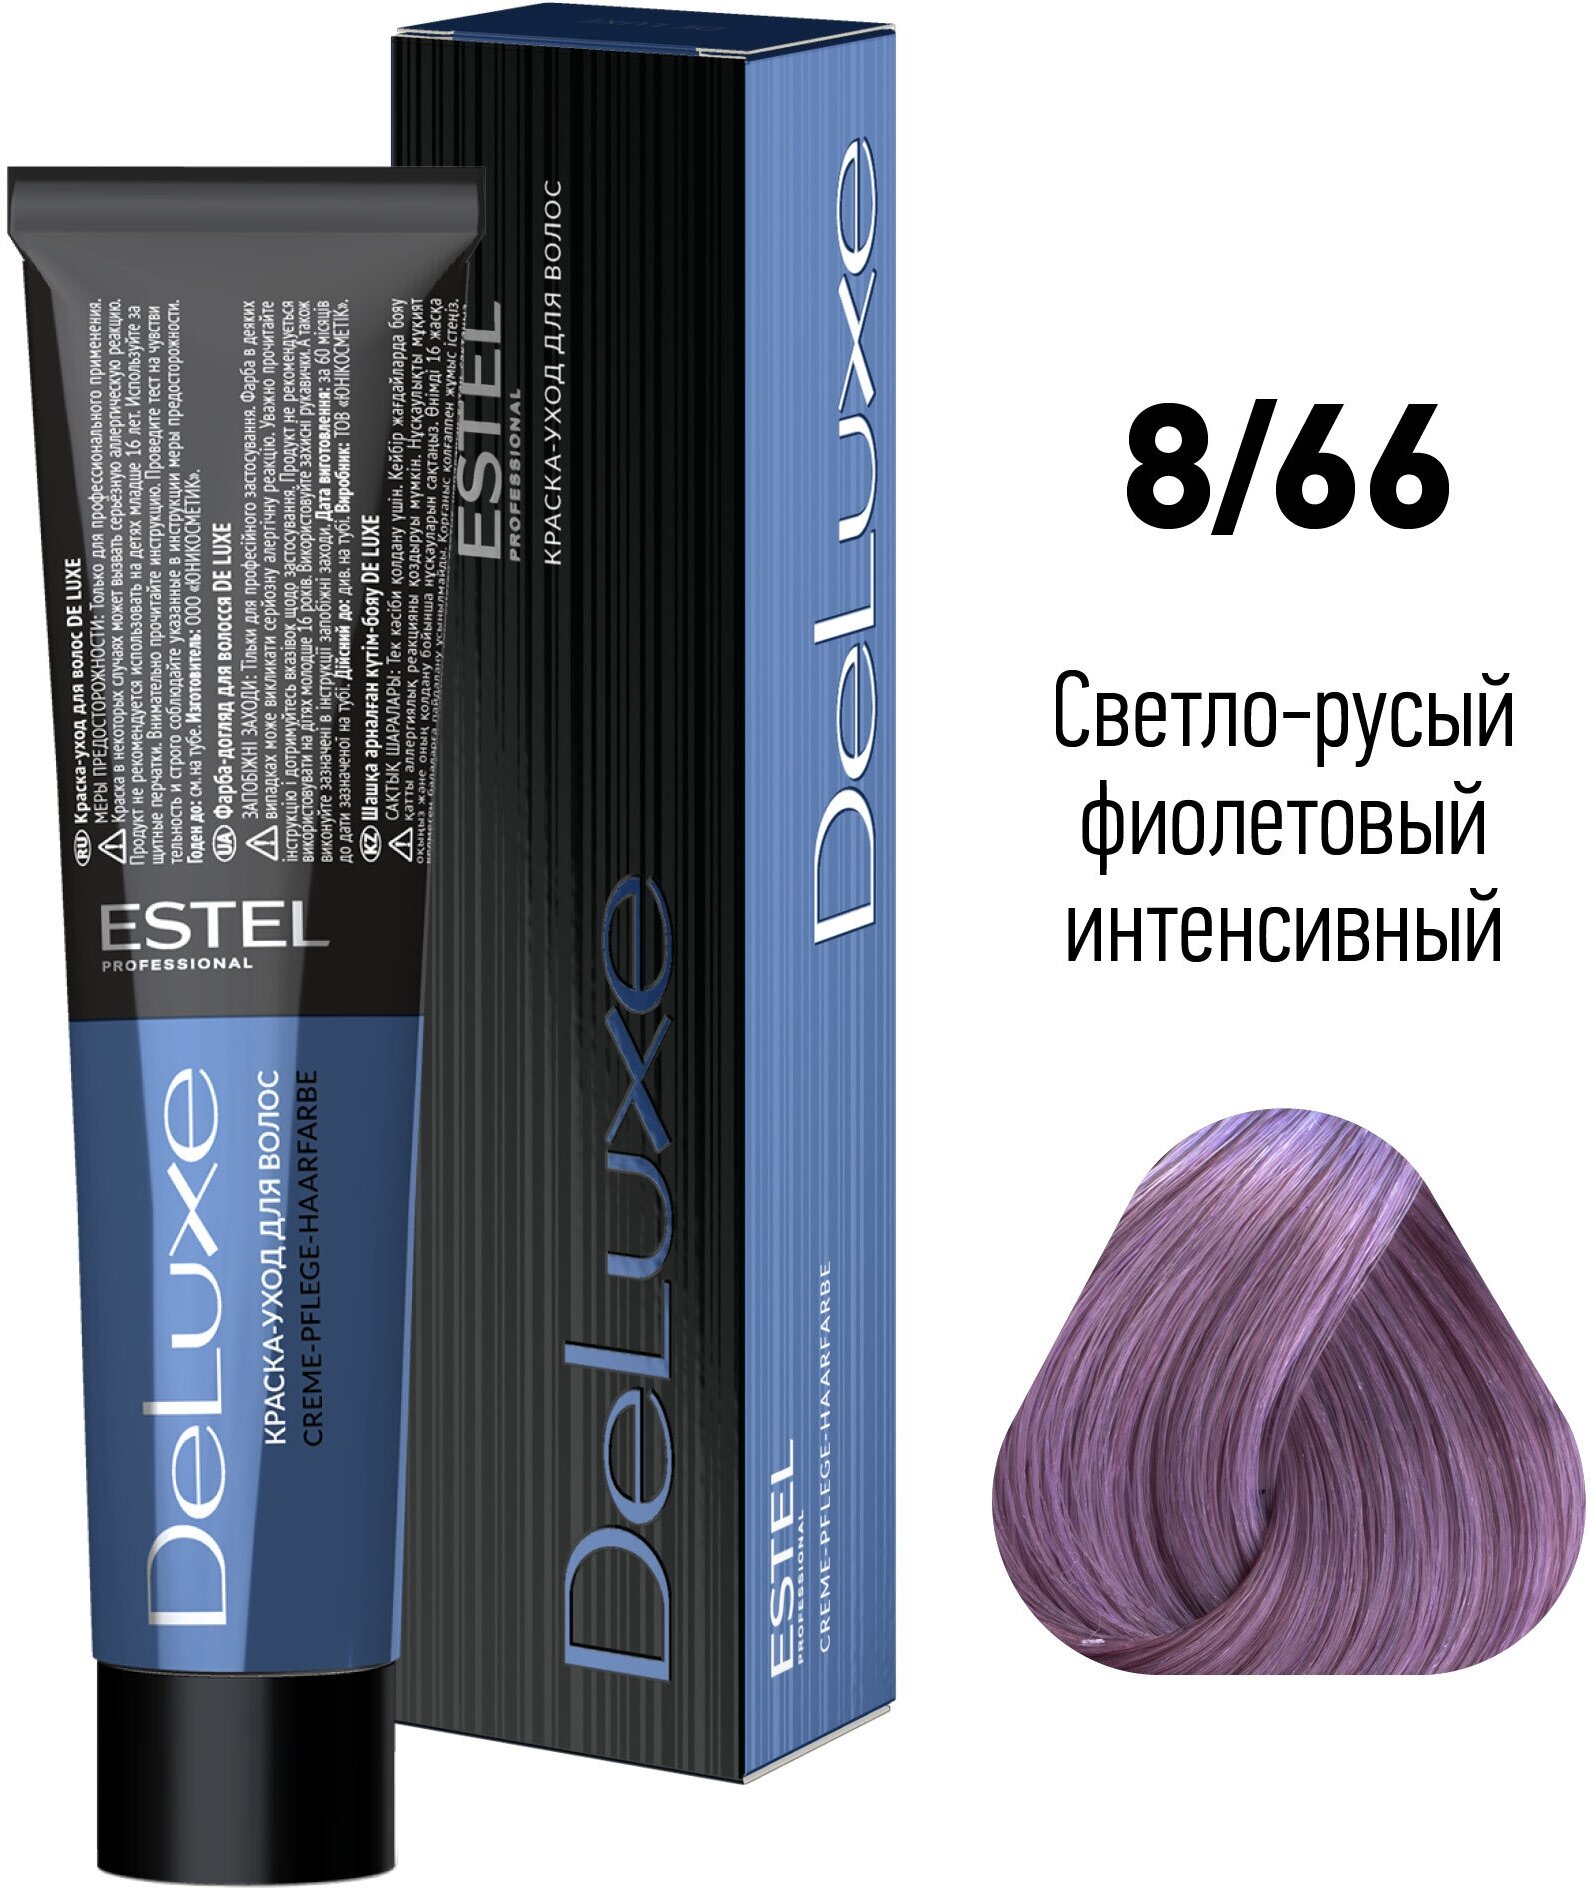 De Luxe стойкая краска-уход для волос, 8/66 светло-русый фиолетовый интенсивный, 60 мл